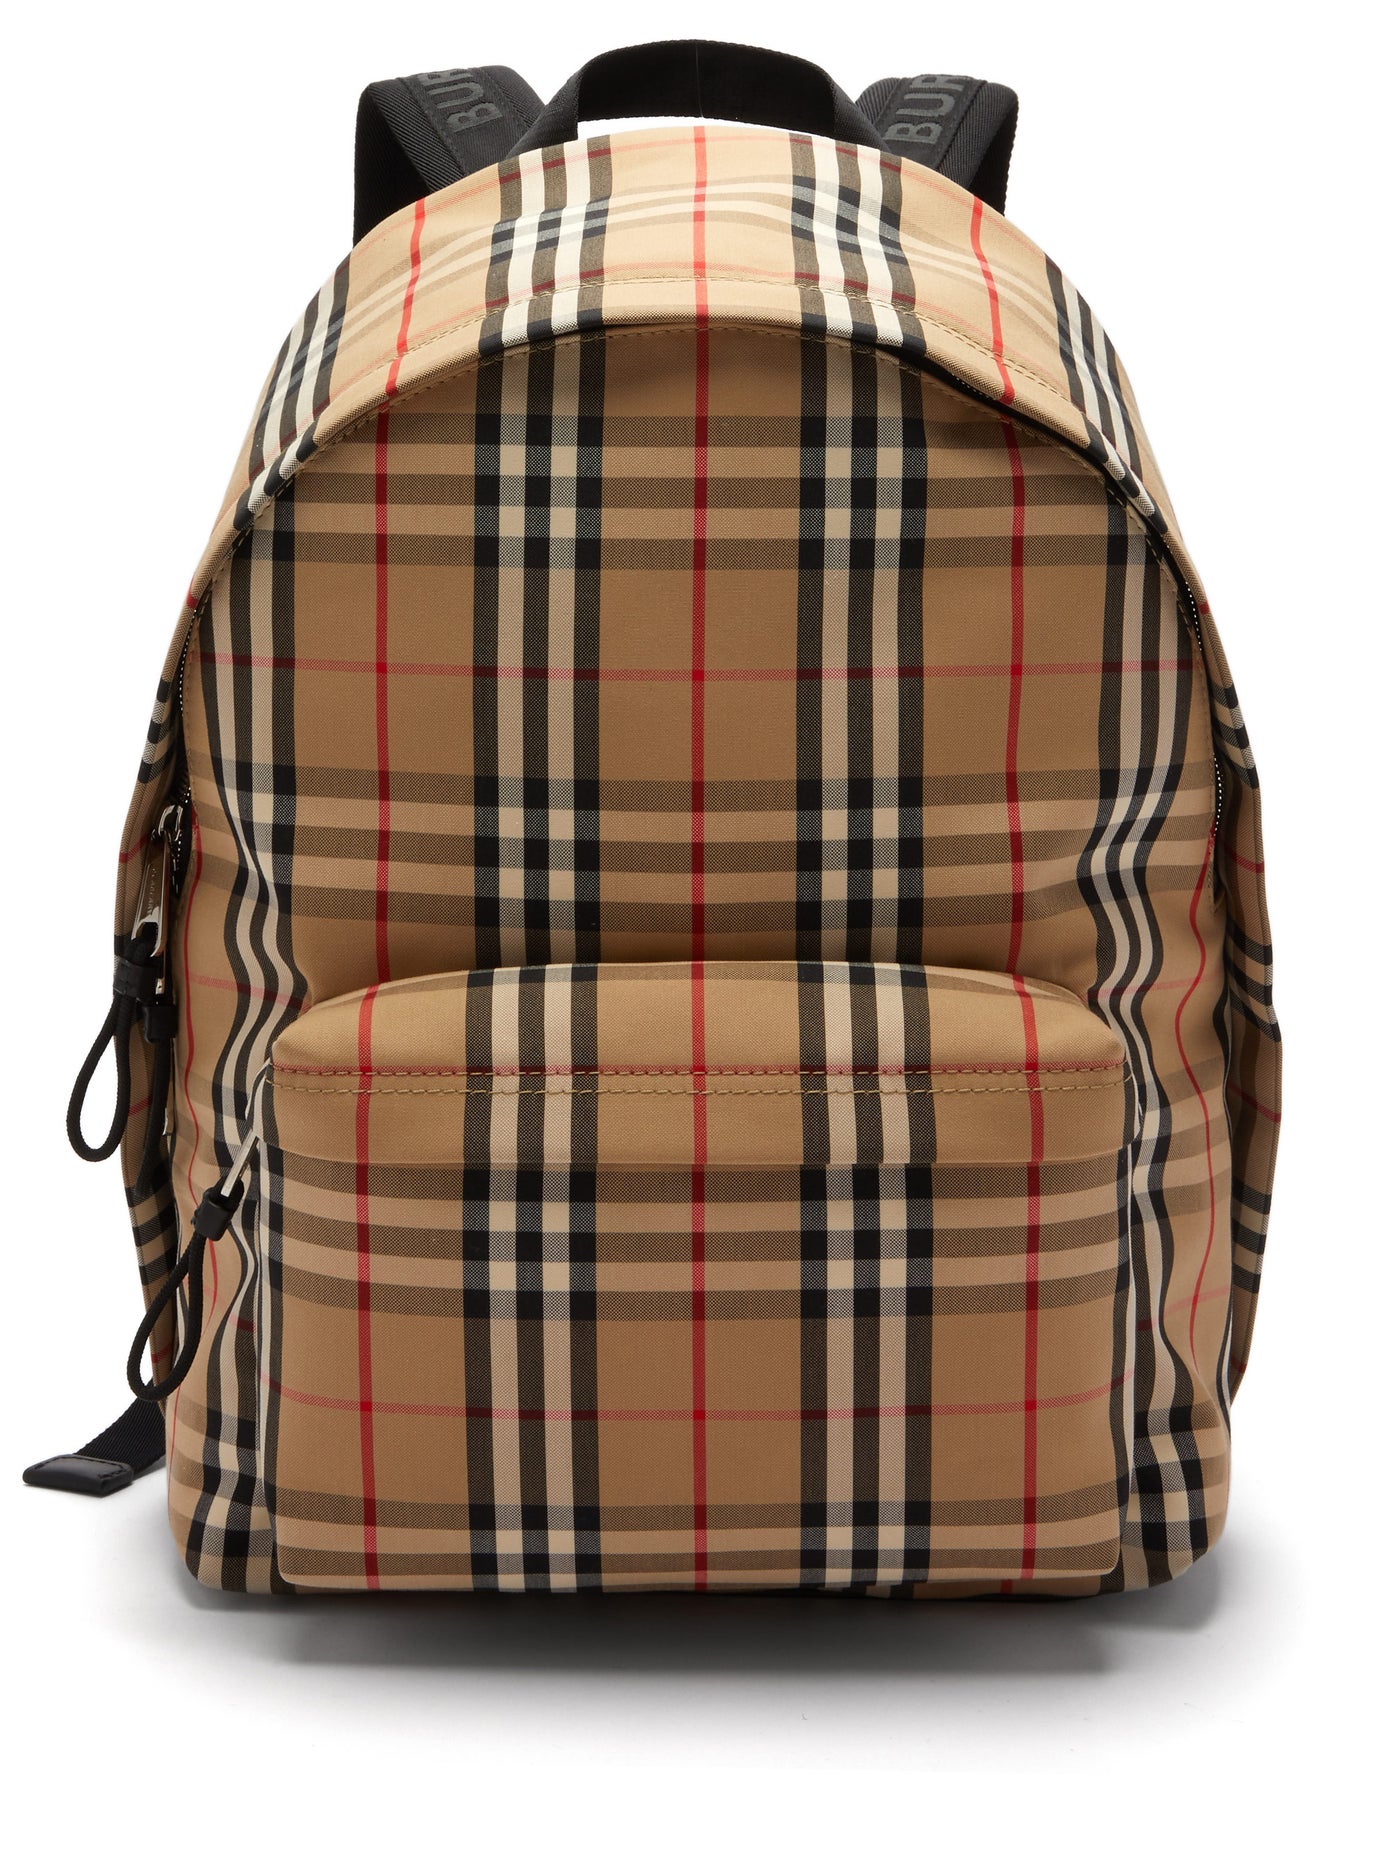 Actualizar 67+ imagen burberry jett backpack